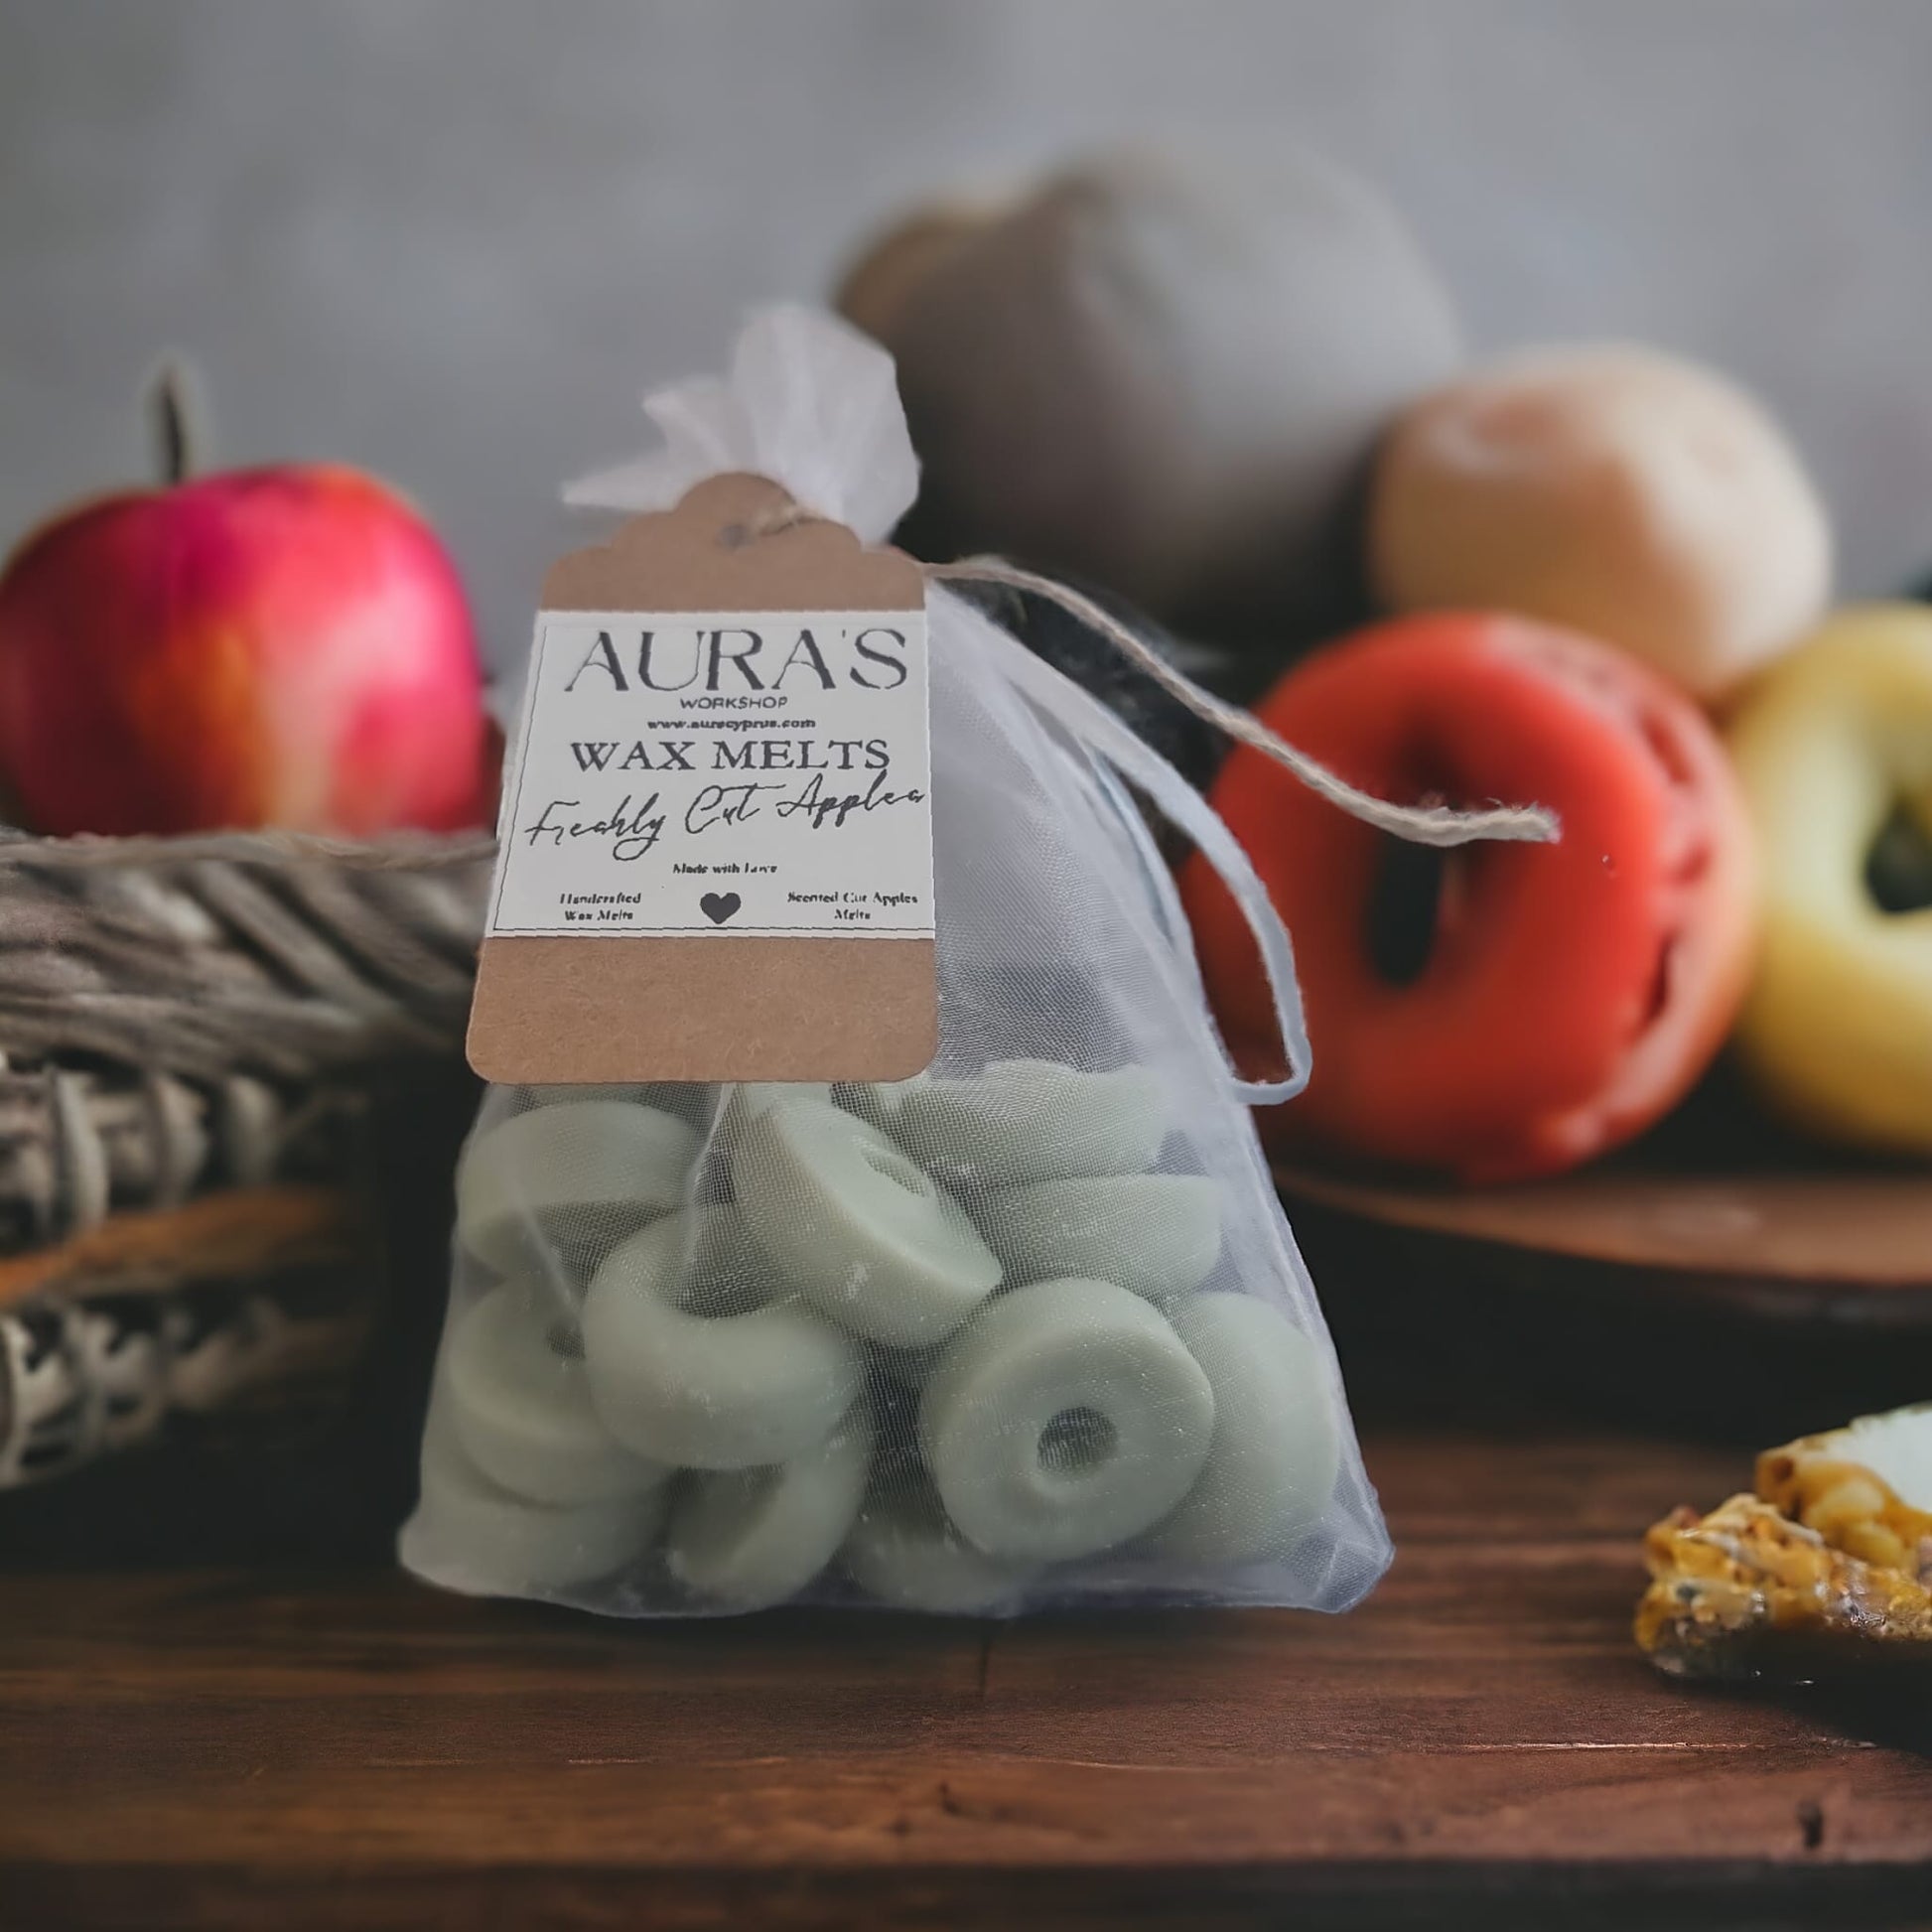 Freshly Cut Apple Donut Shaped x15 Wax Melt Bar in Organza Bag - Auras Workshop  -   -   - Cyprus & Greece